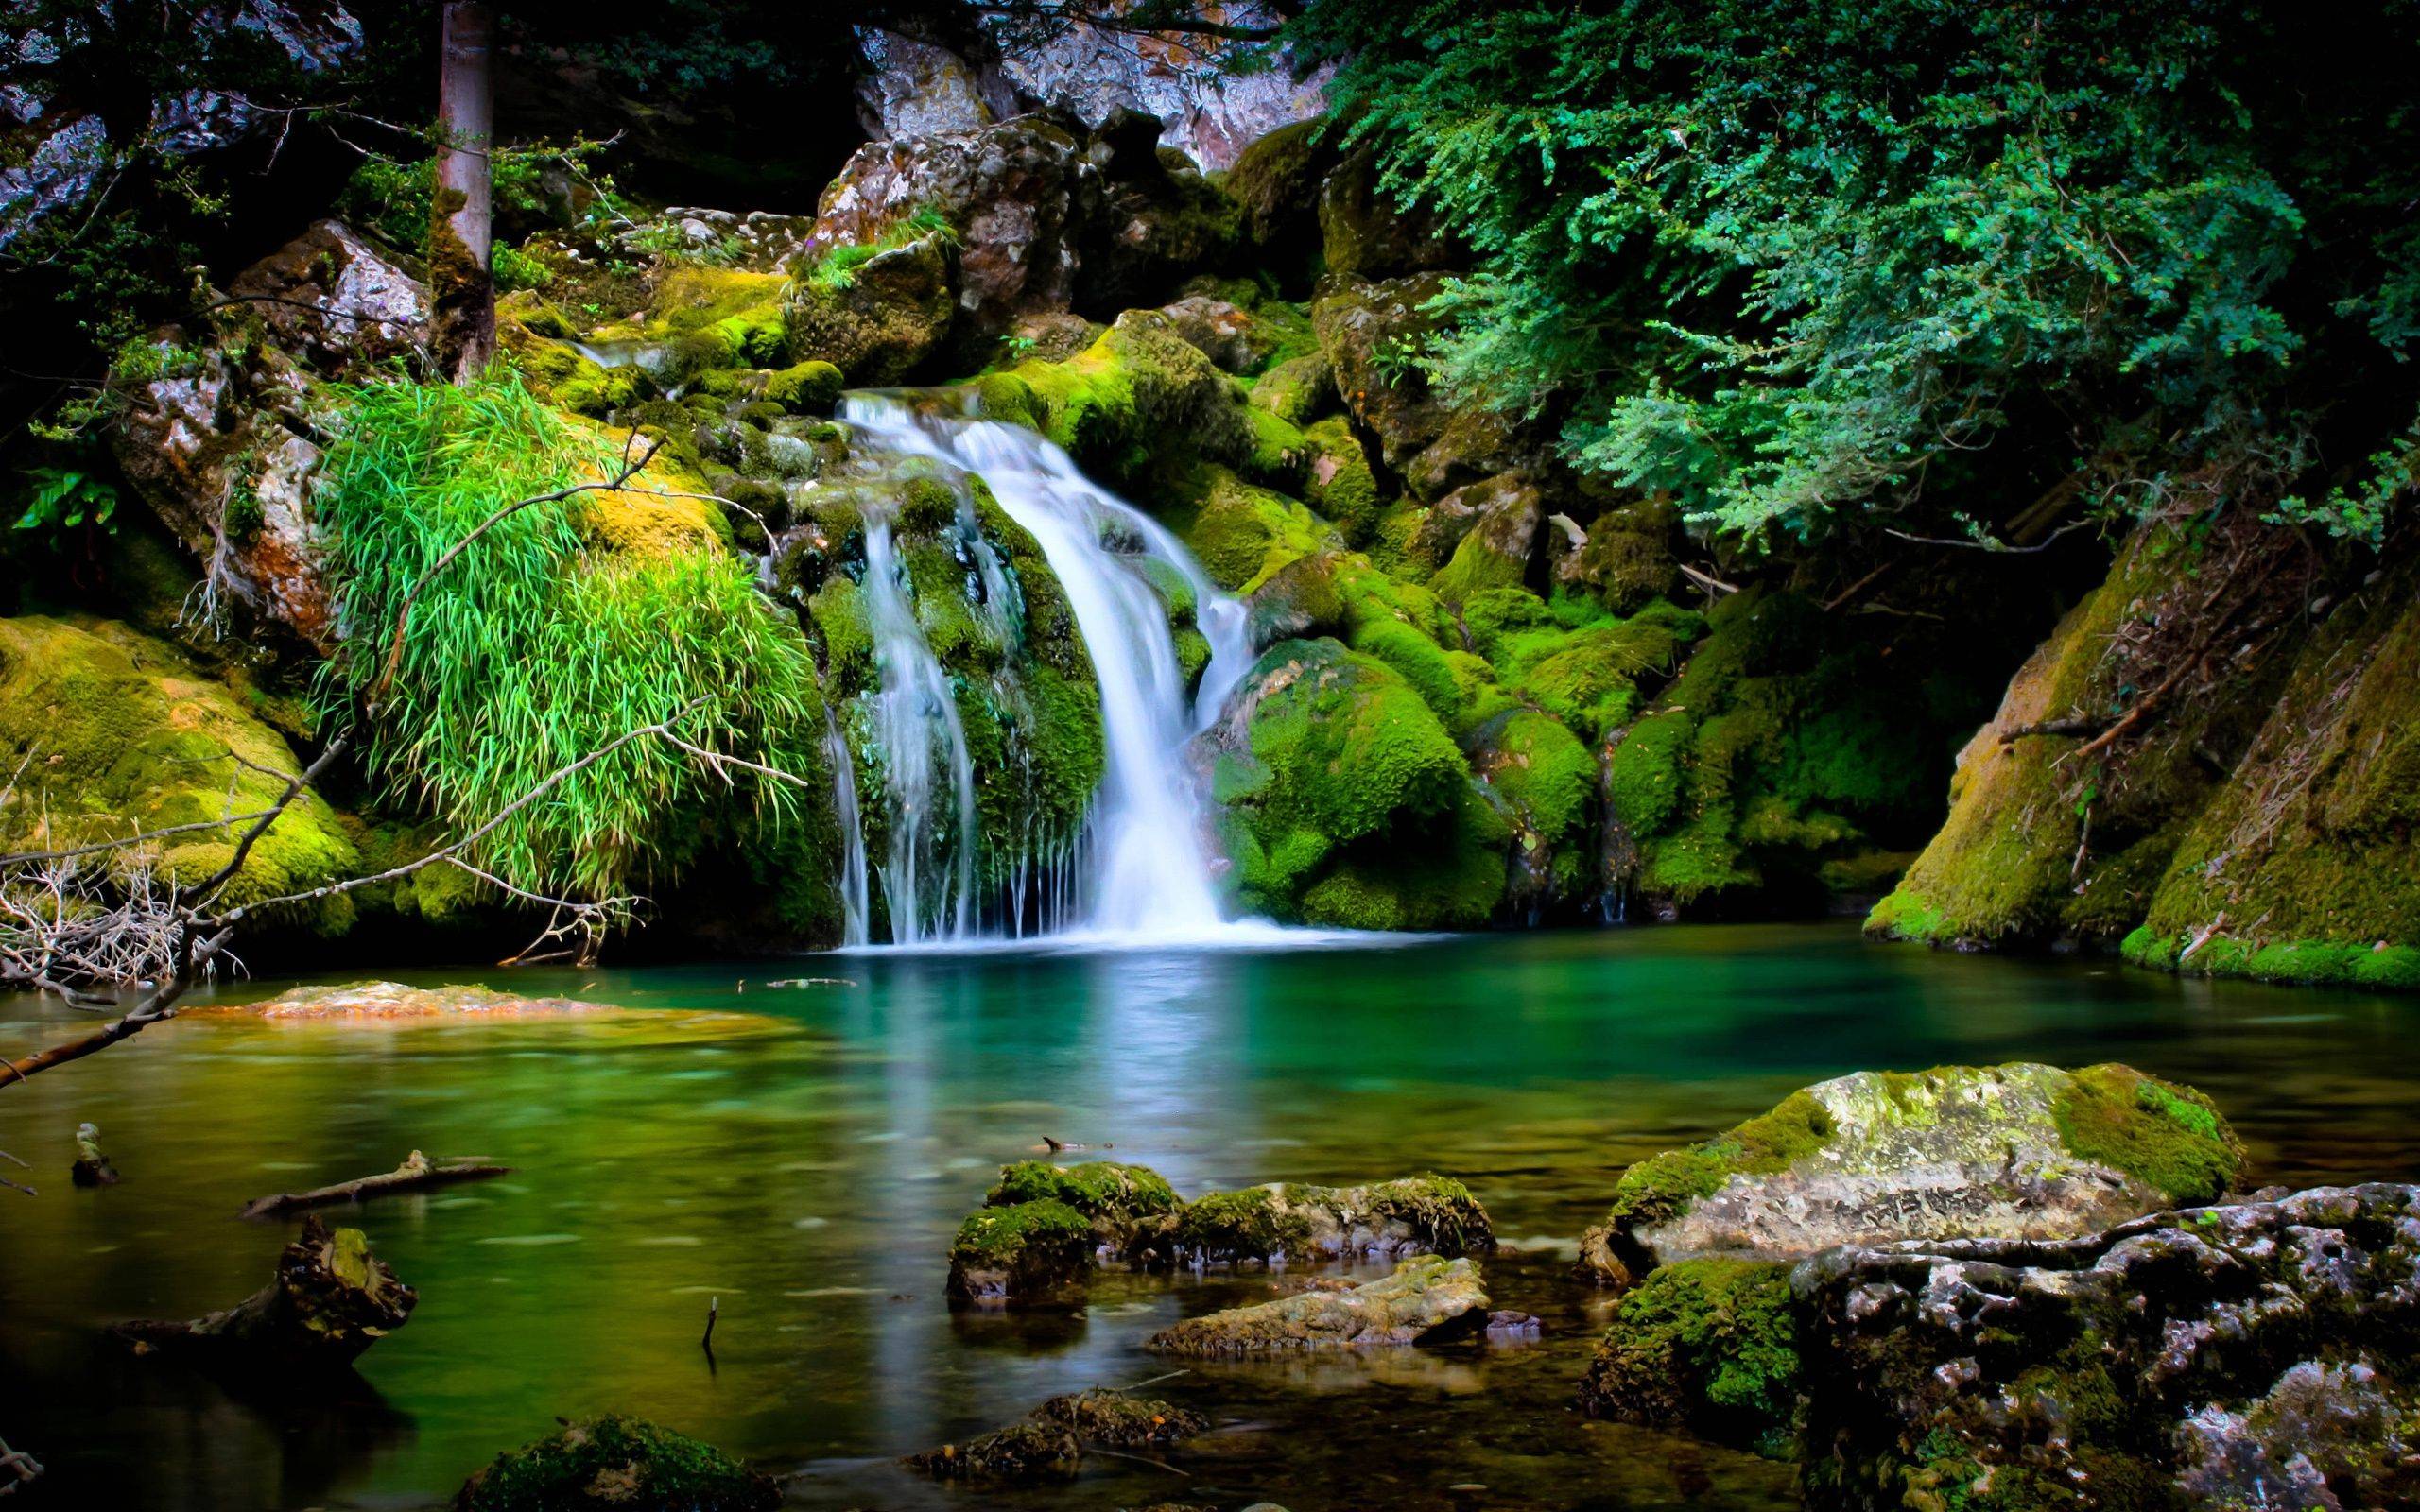 Hình nền thác nước là một sự lựa chọn tuyệt vời để tái tạo năng lượng và cảm nhận sức mạnh của thiên nhiên. Với những hình ảnh đẹp lung linh của các thác nước, bạn sẽ được đưa đến khu rừng nhiệt đới và tận hưởng những cảm giác tuyệt vời.